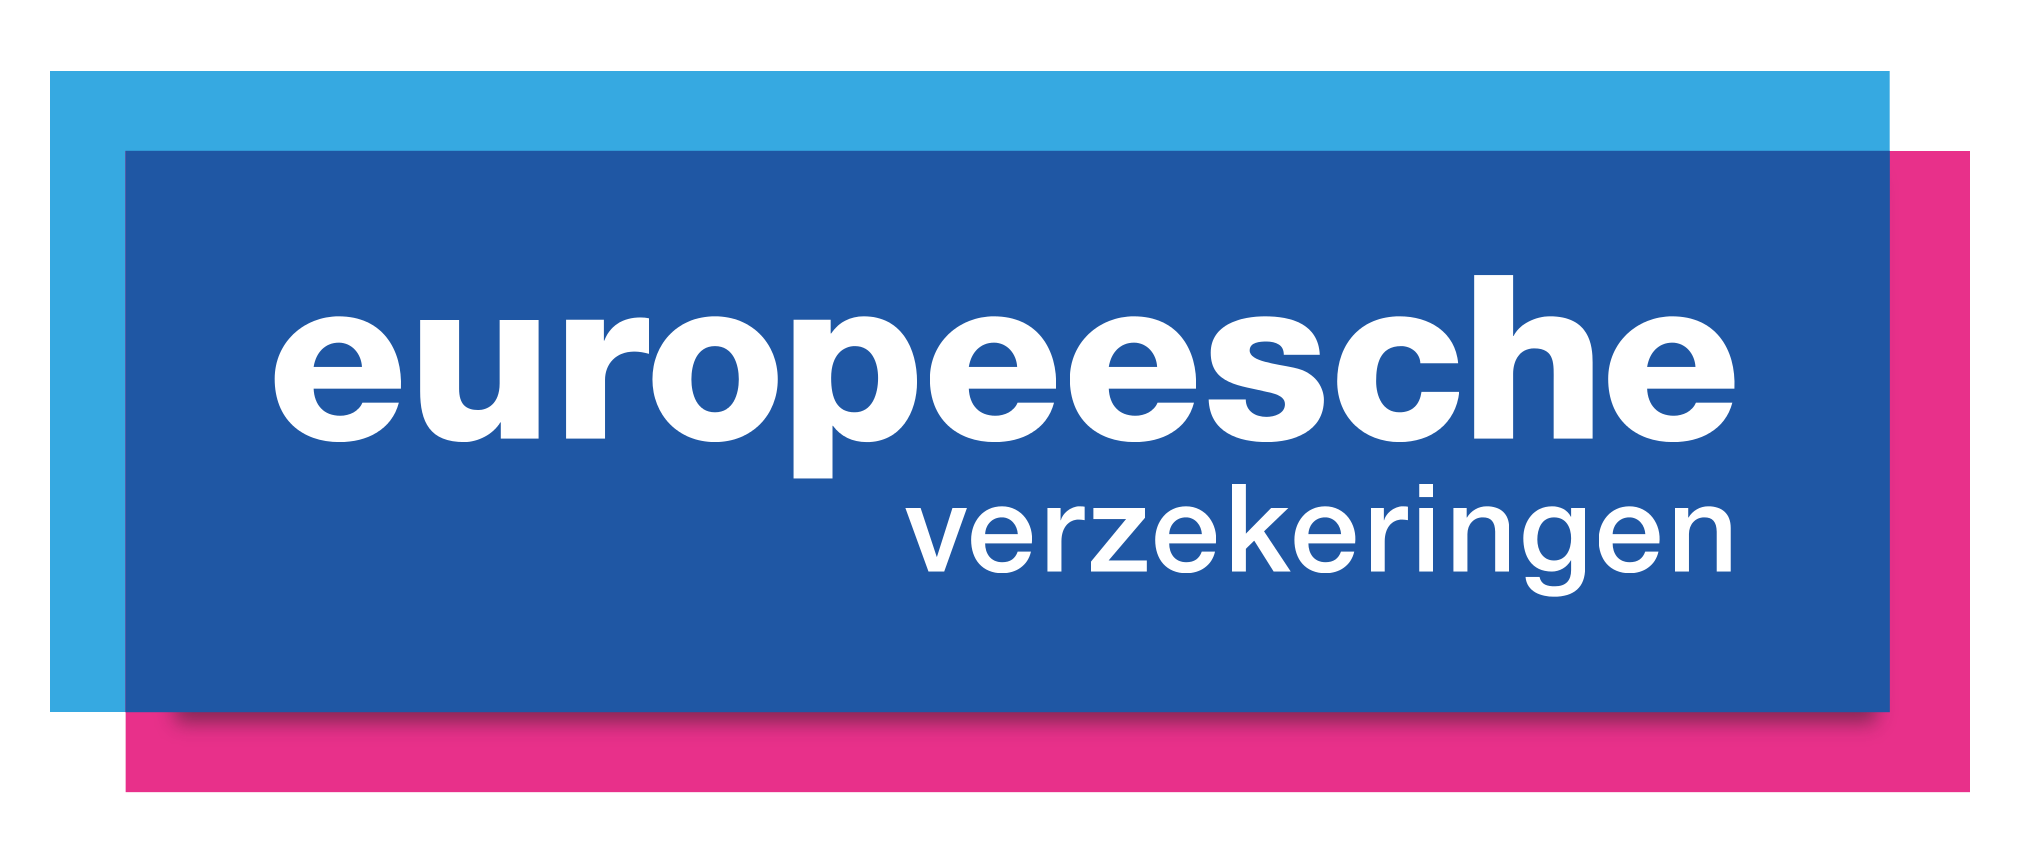 Logo Europeesche verzekeringen